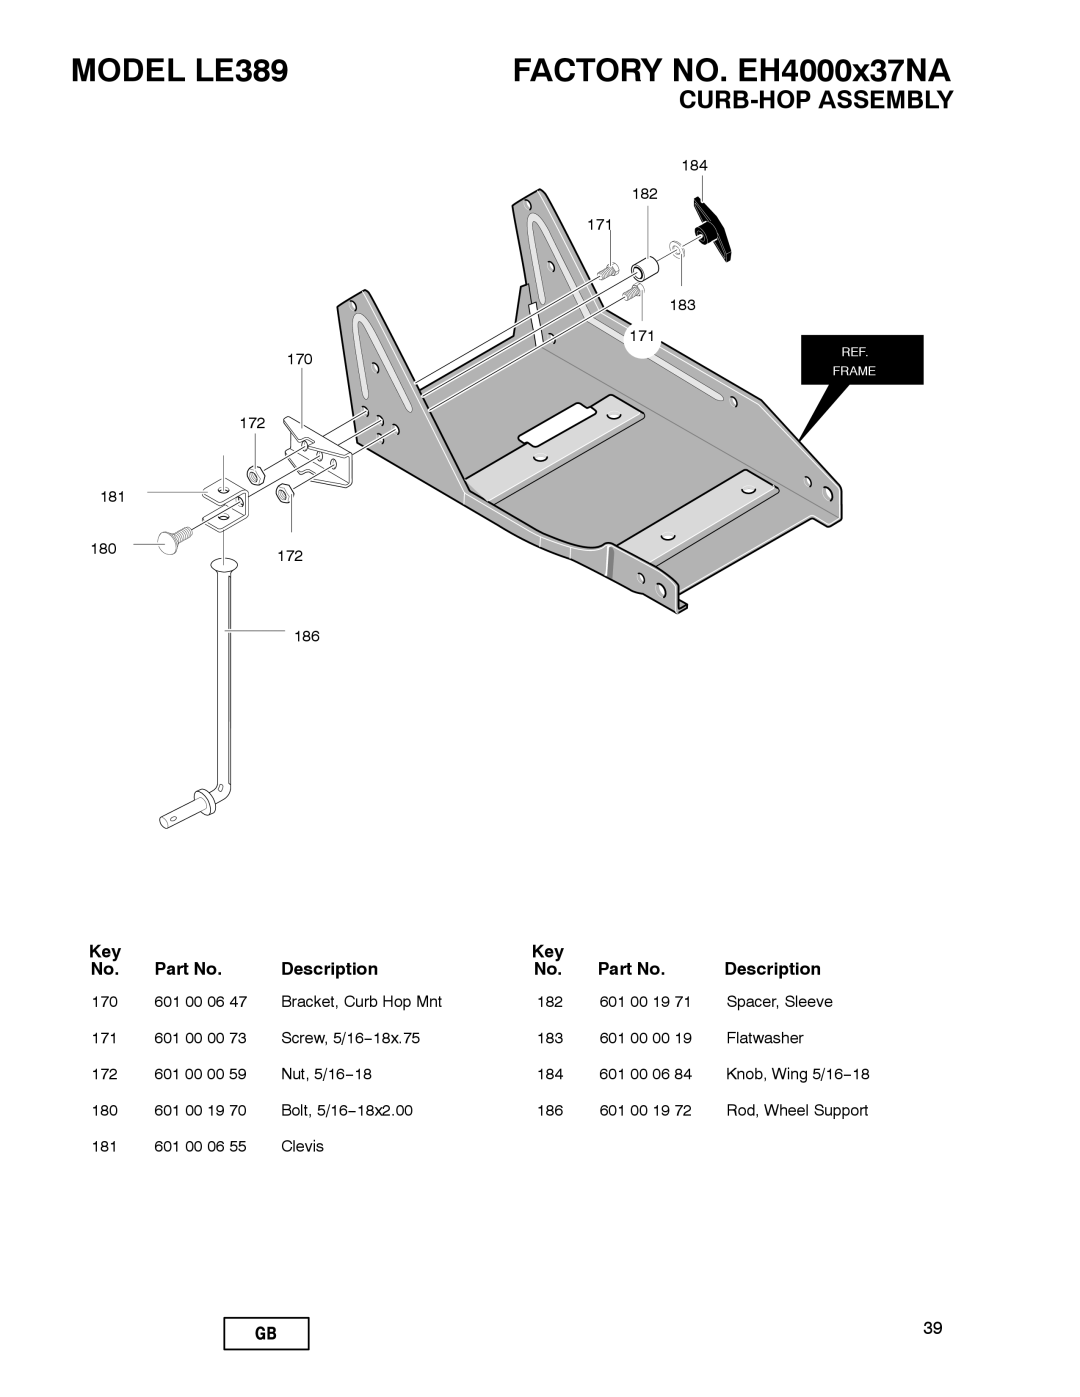 Husqvarna manual Curb-Hop Assembly, MODEL LE389, FACTORY NO. EH4000x37NA, Description 